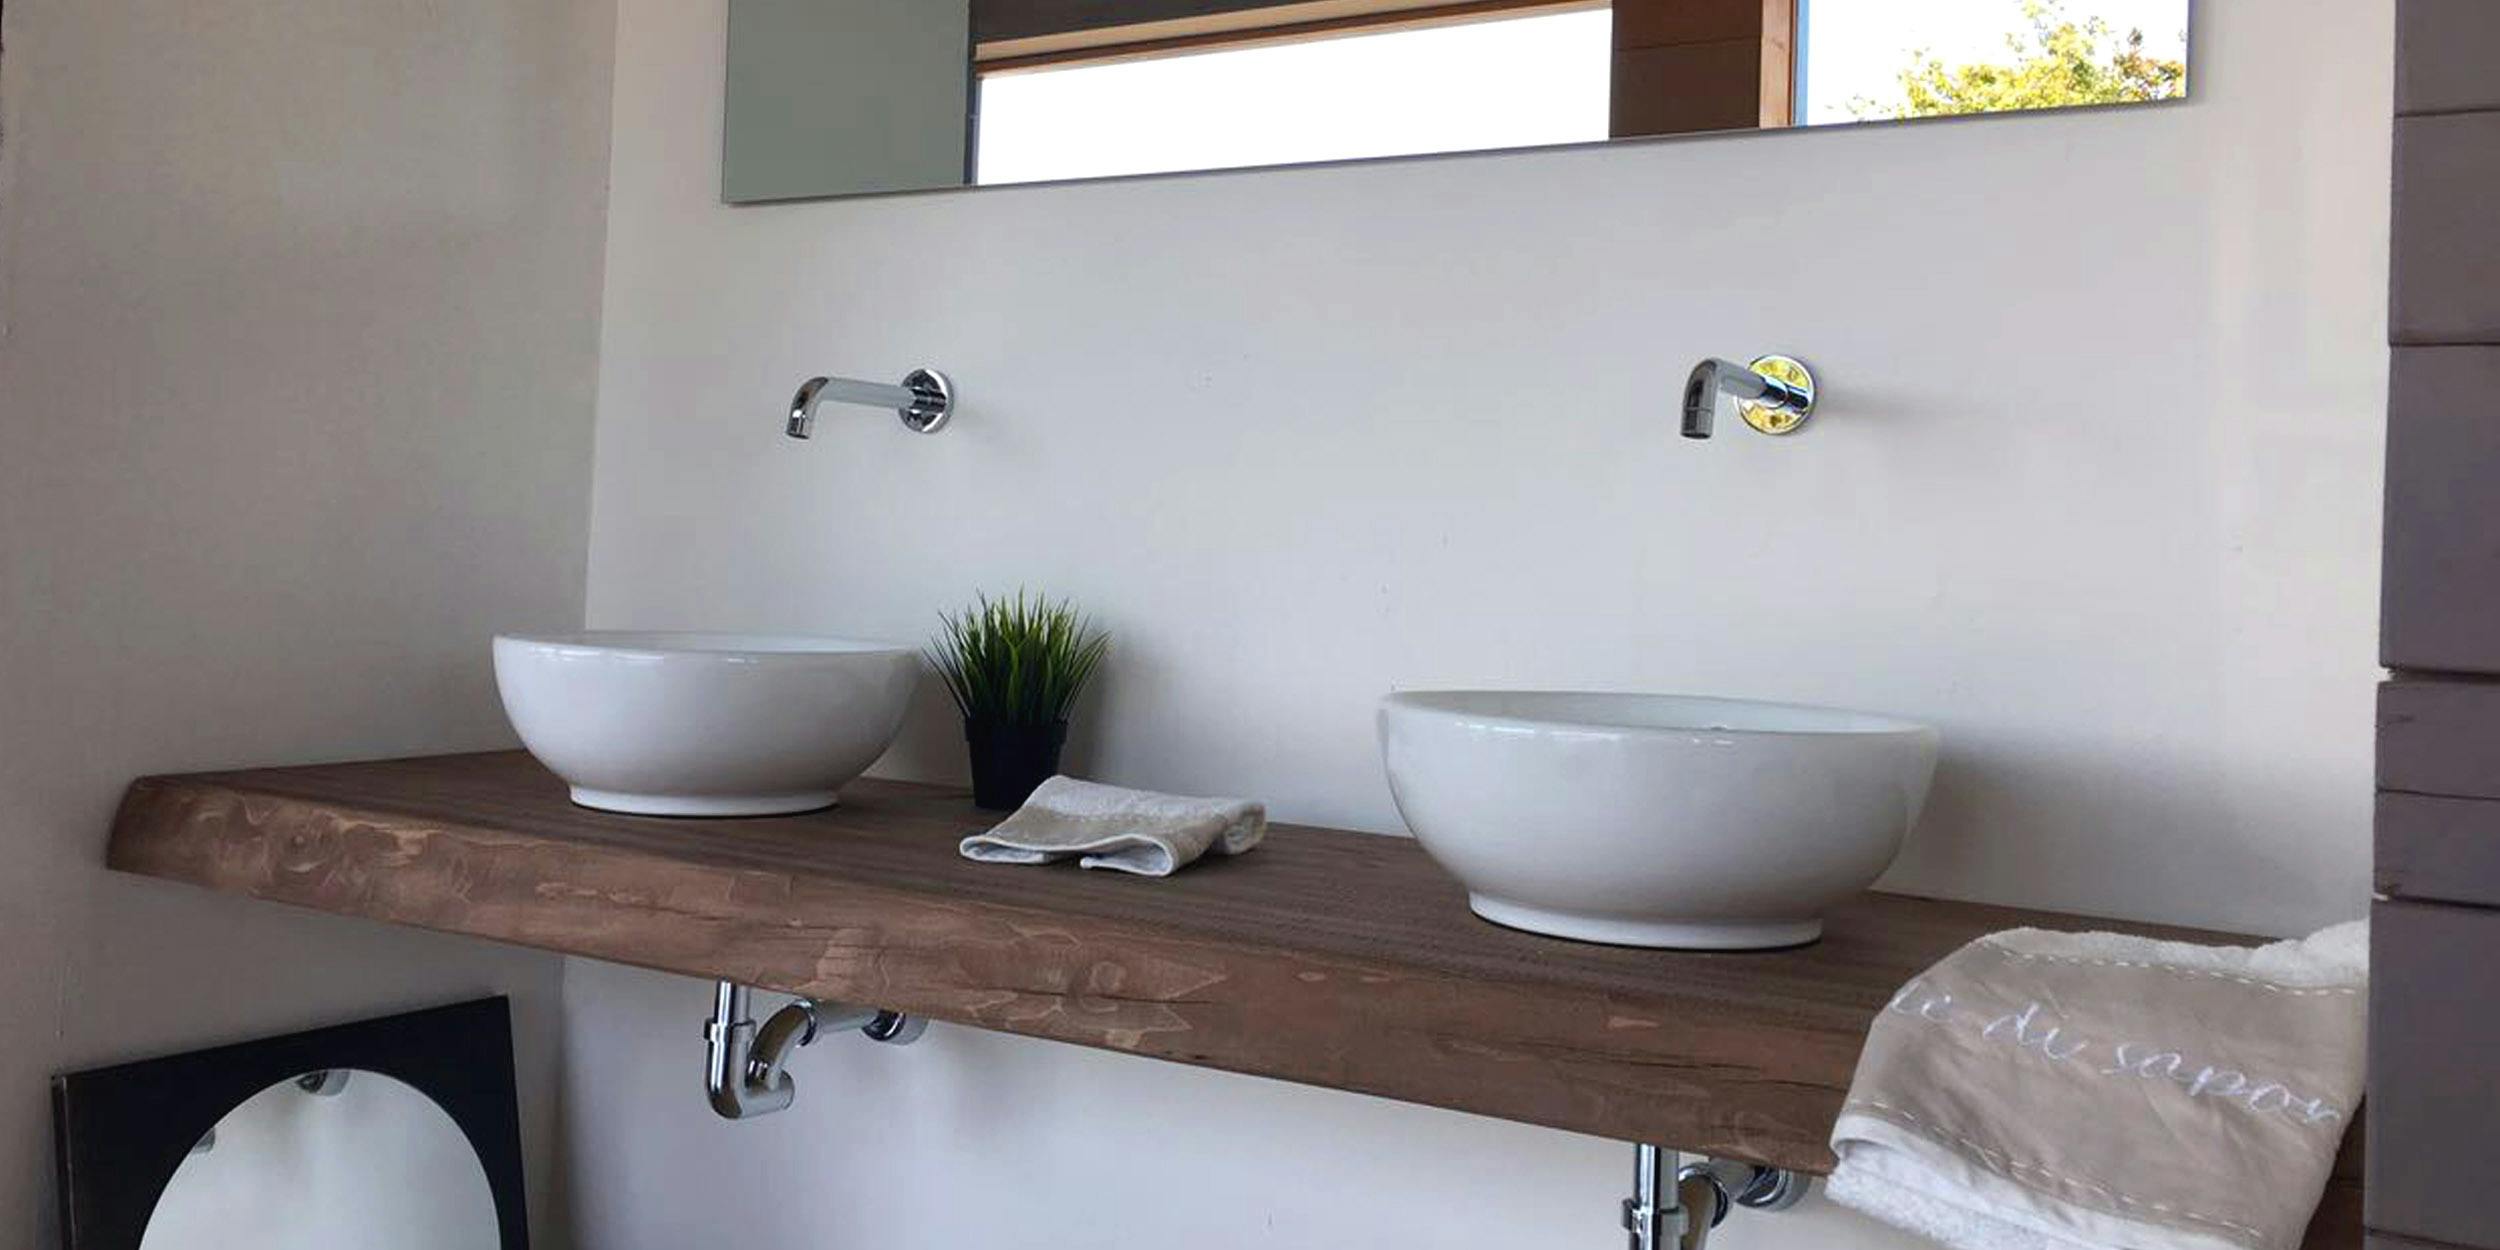 Il legno massello in bagno: la piana lavabo